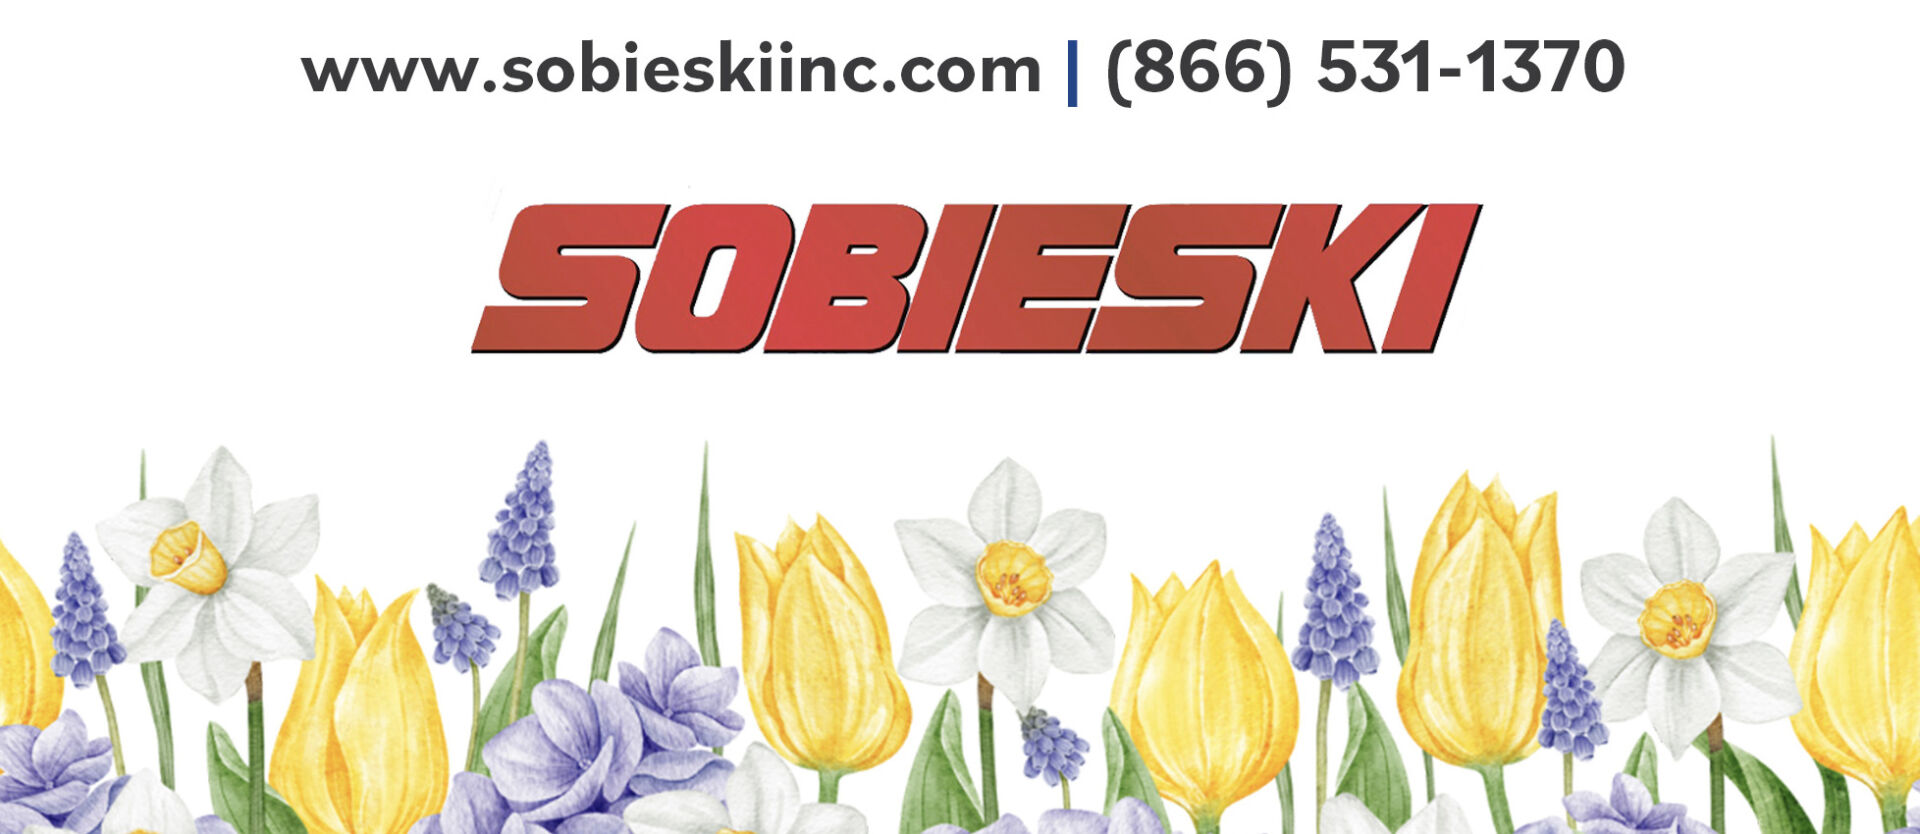 Spring Sobieski